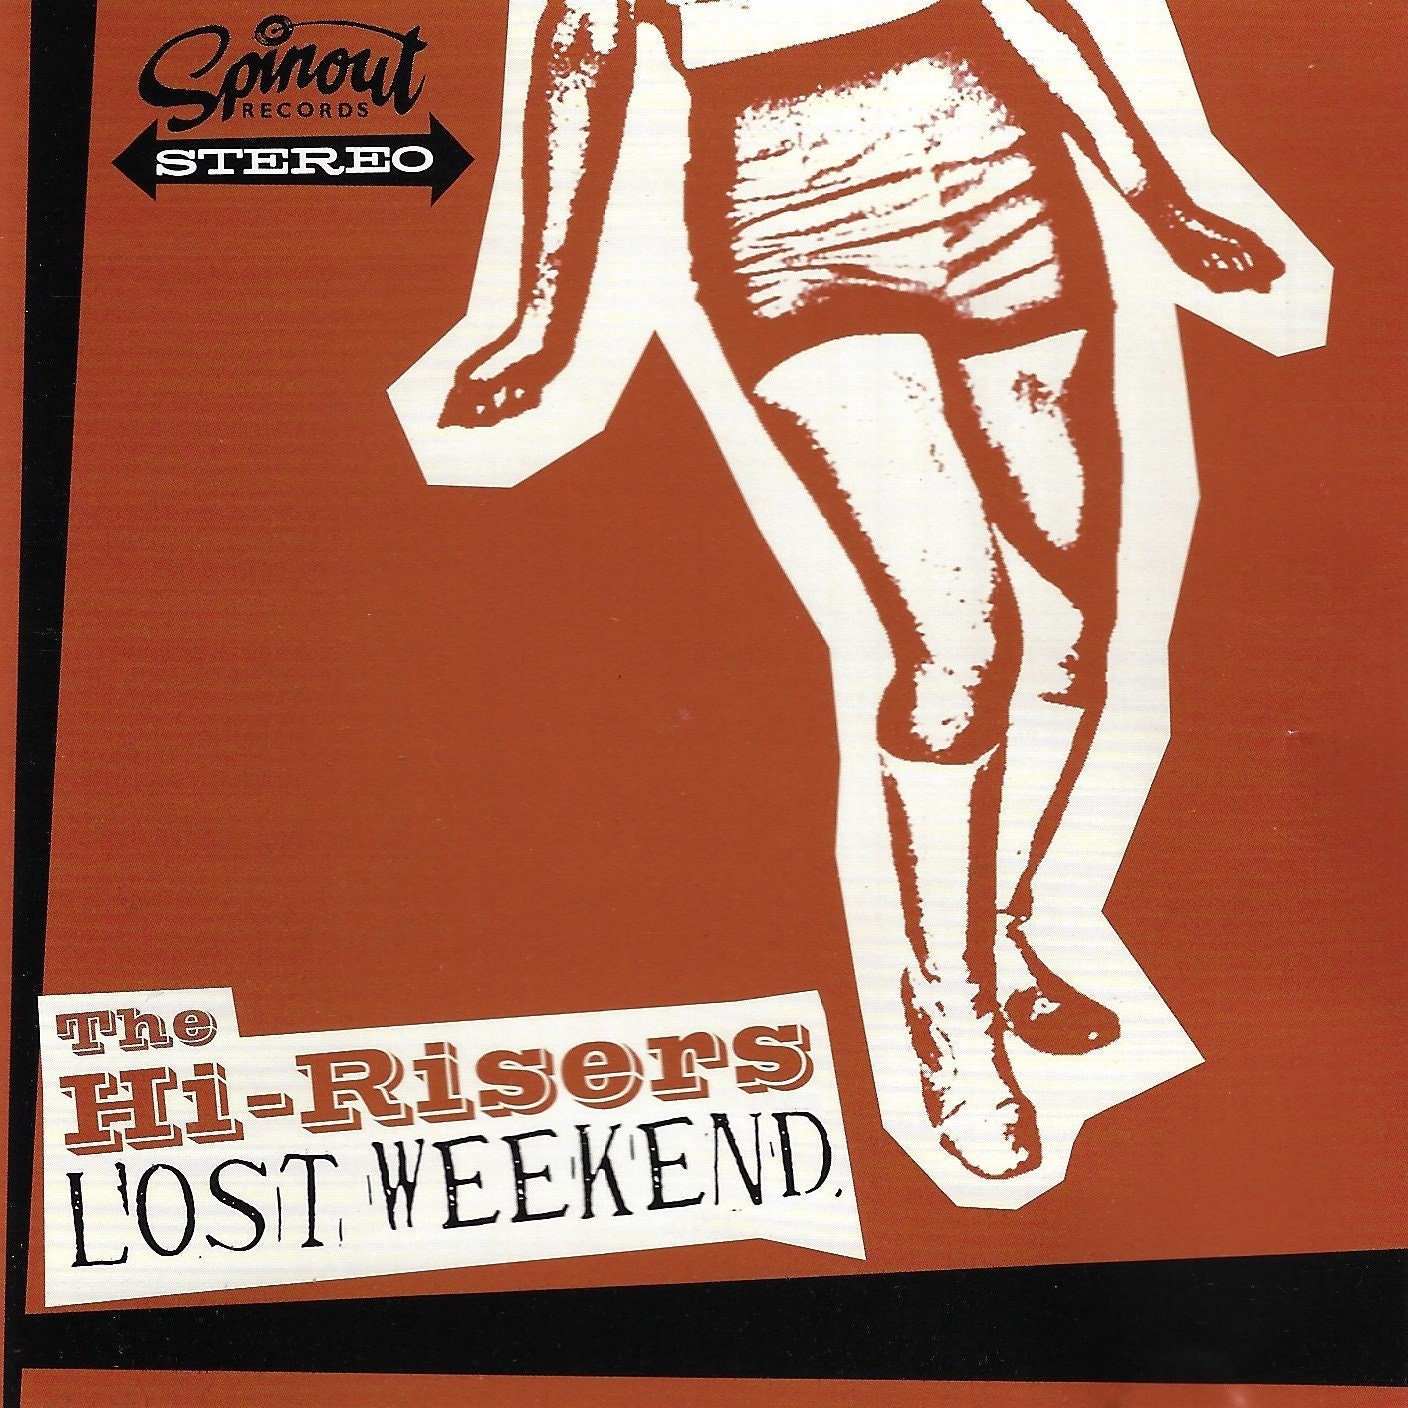 The Hi-Risers "Lost Weekend CD"